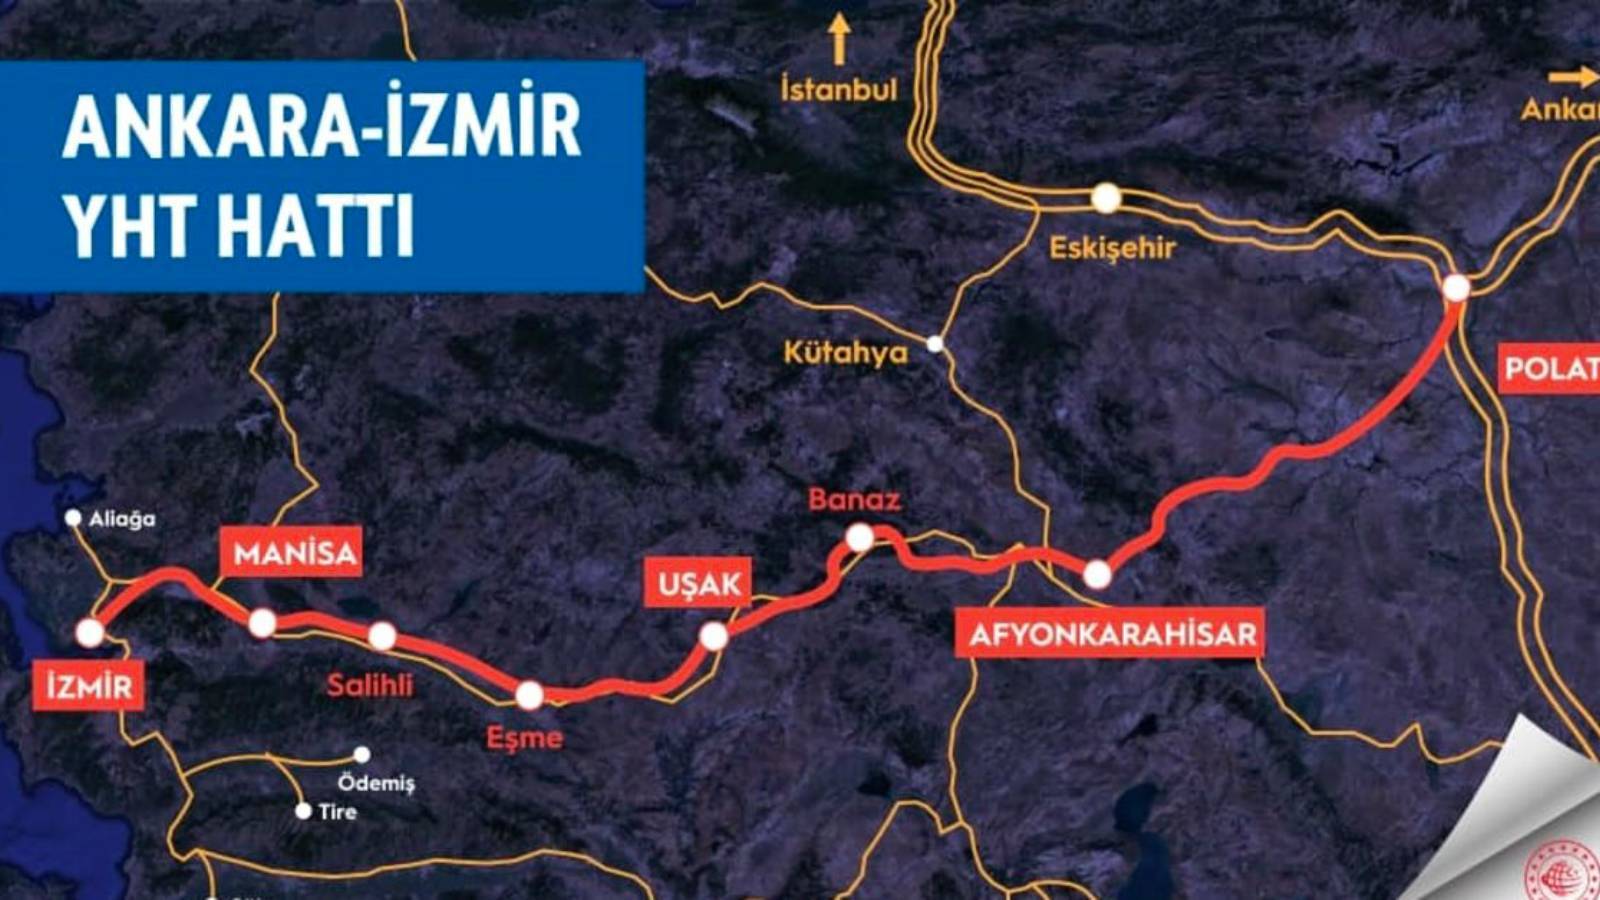 Ankara-İzmir YHT maliyeti beşinci kez arttı: Artık 15 kat daha pahalı